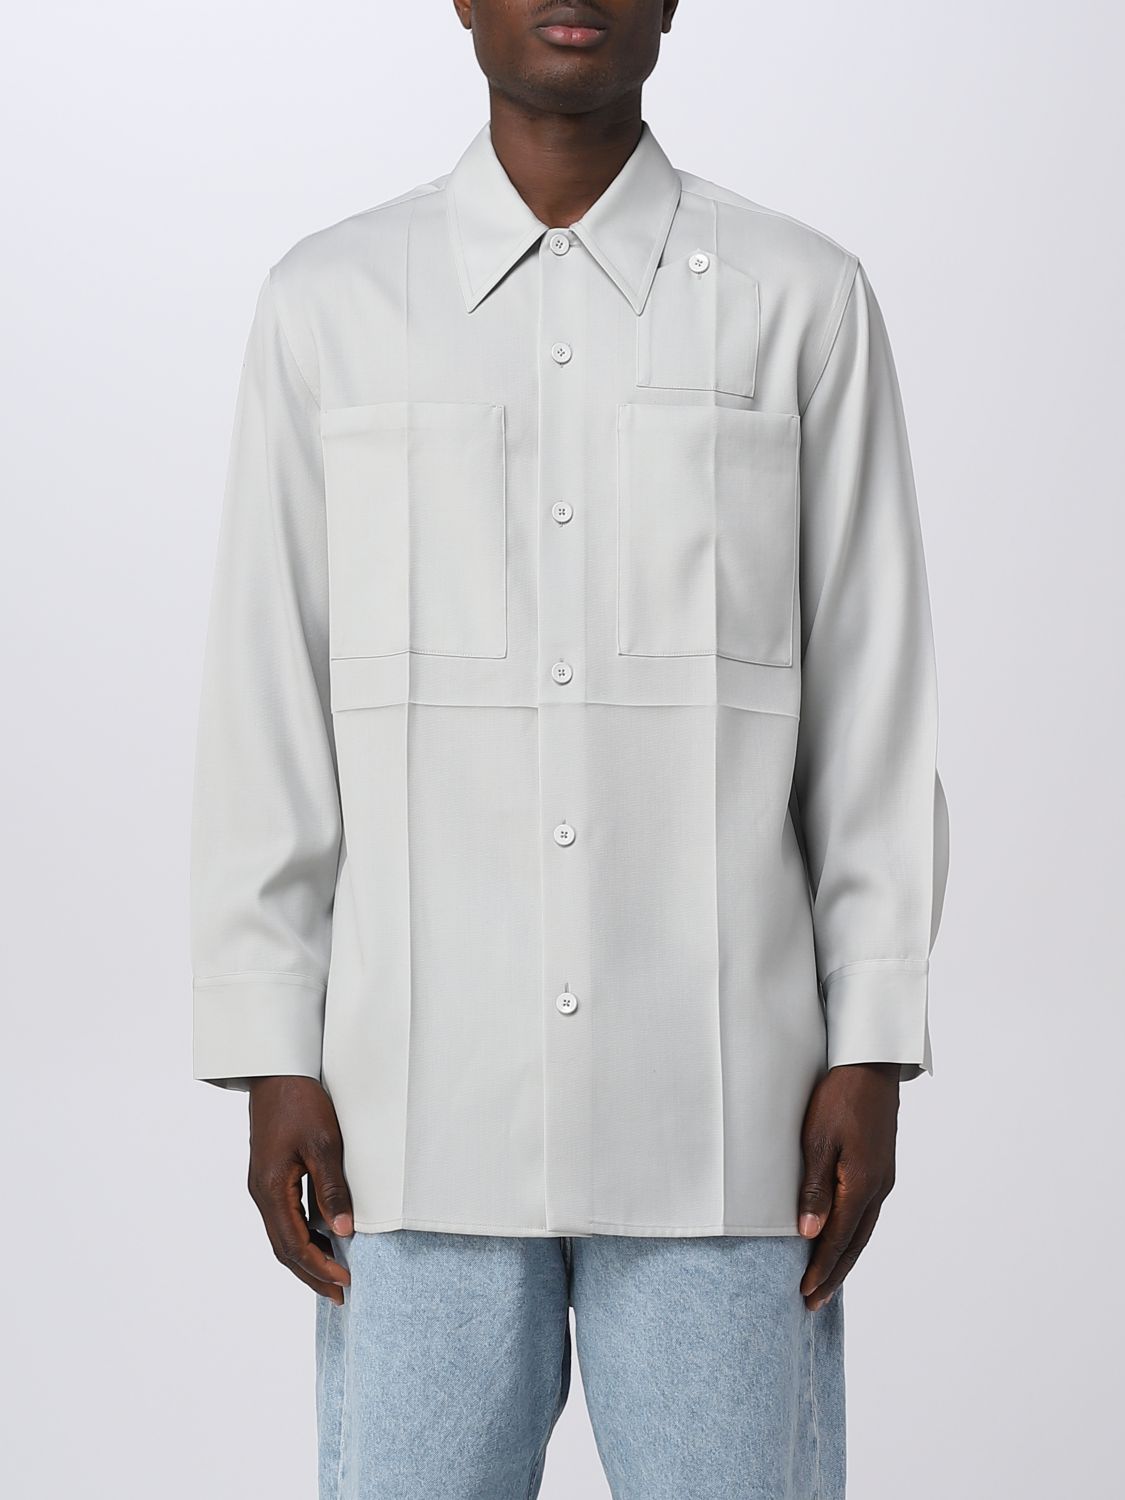 Door Correctie Flash JIL SANDER: shirt for man - White | Jil Sander shirt J22DL0106J40003 online  on GIGLIO.COM